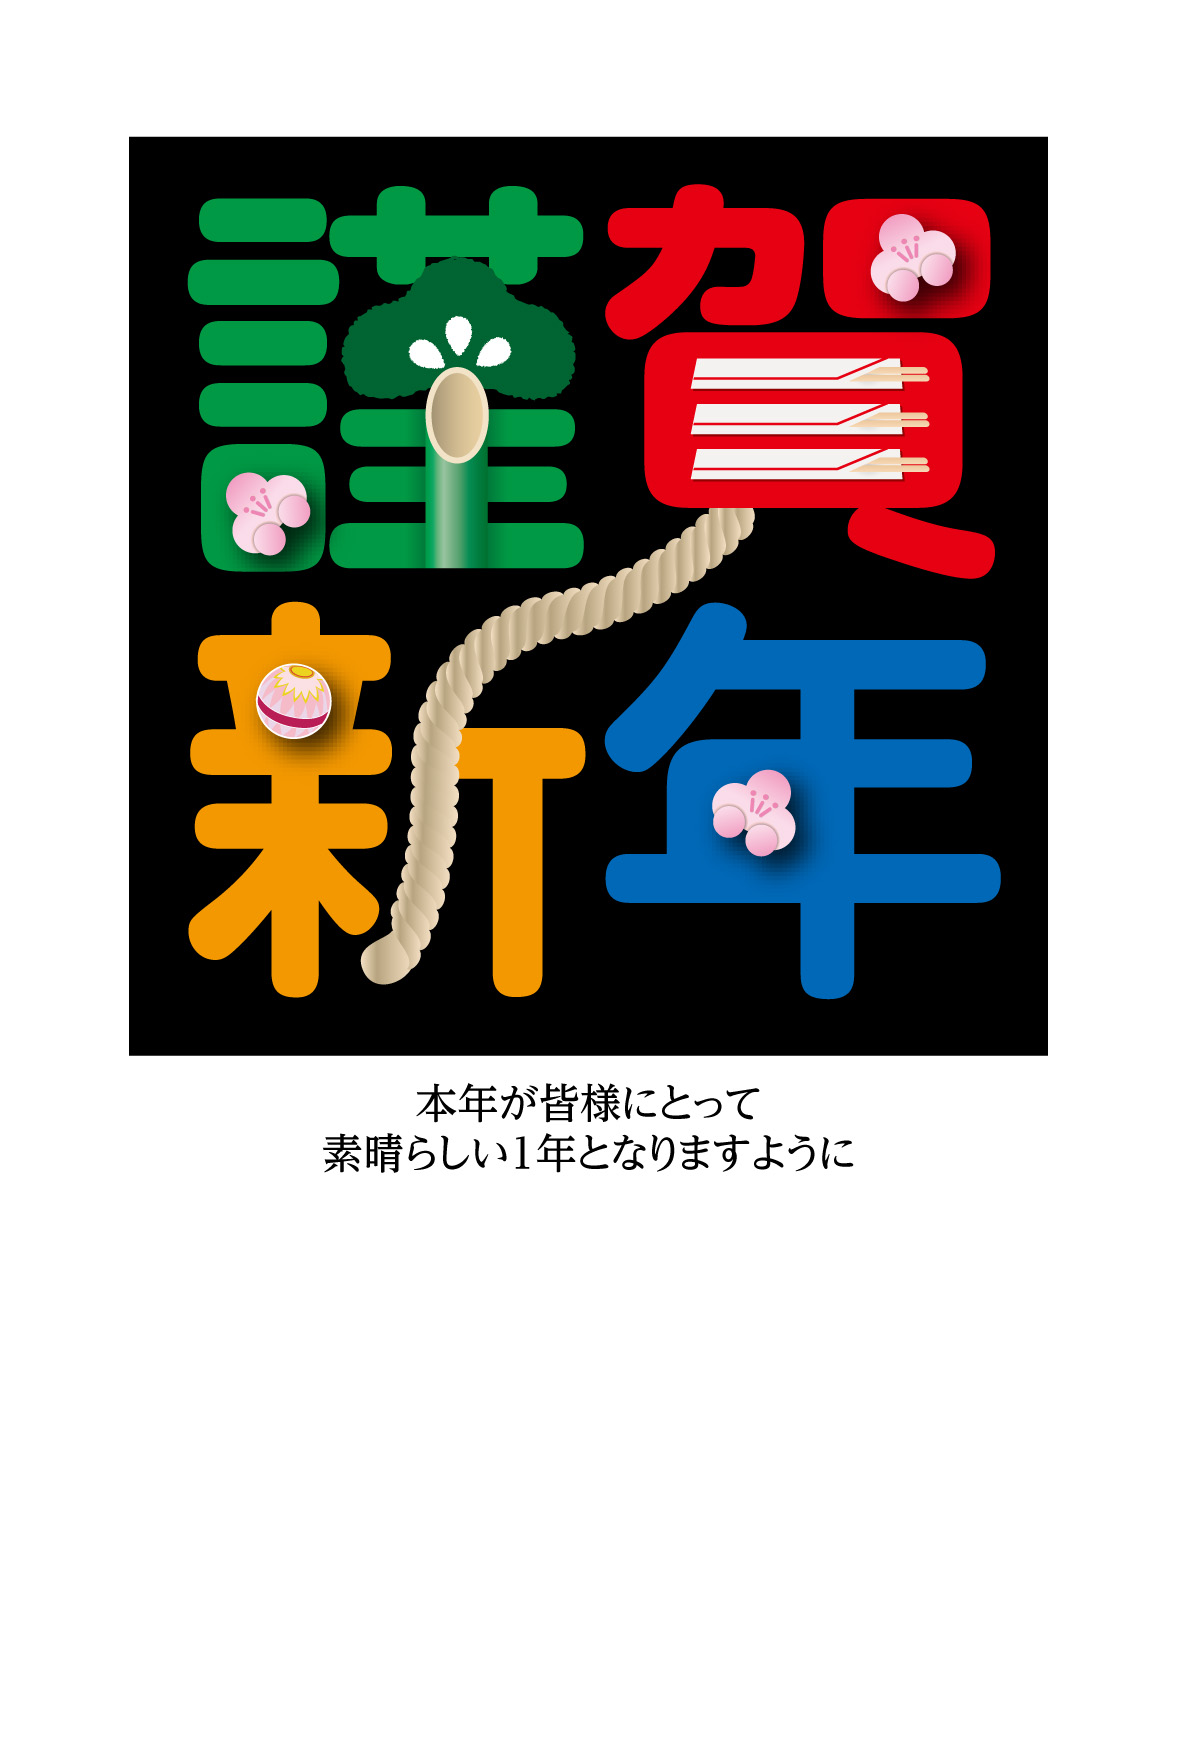 謹賀新年絵文字 スタンダード年賀状無料素材emoji04